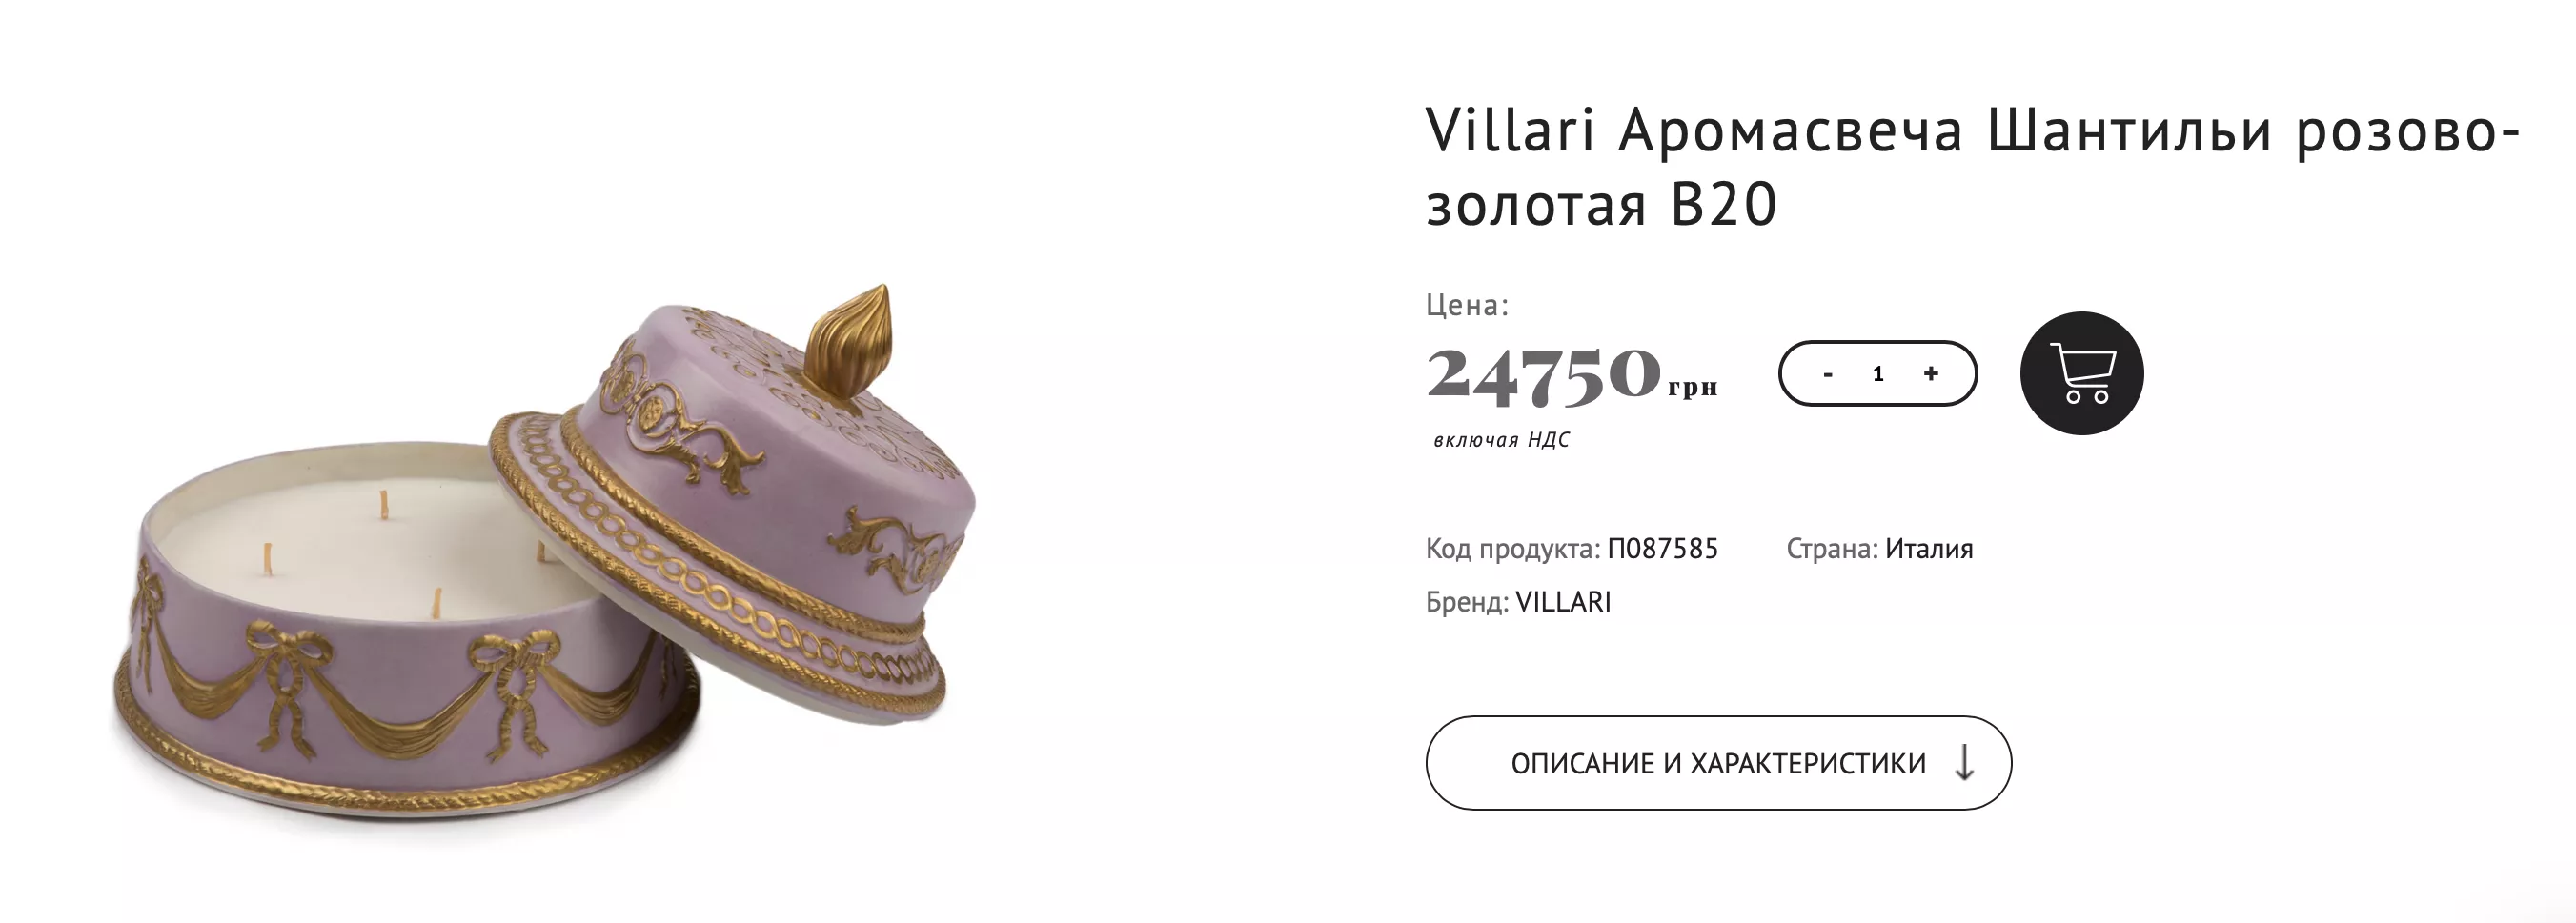 Драгоценную свечу от Villari продают за ₴24 750